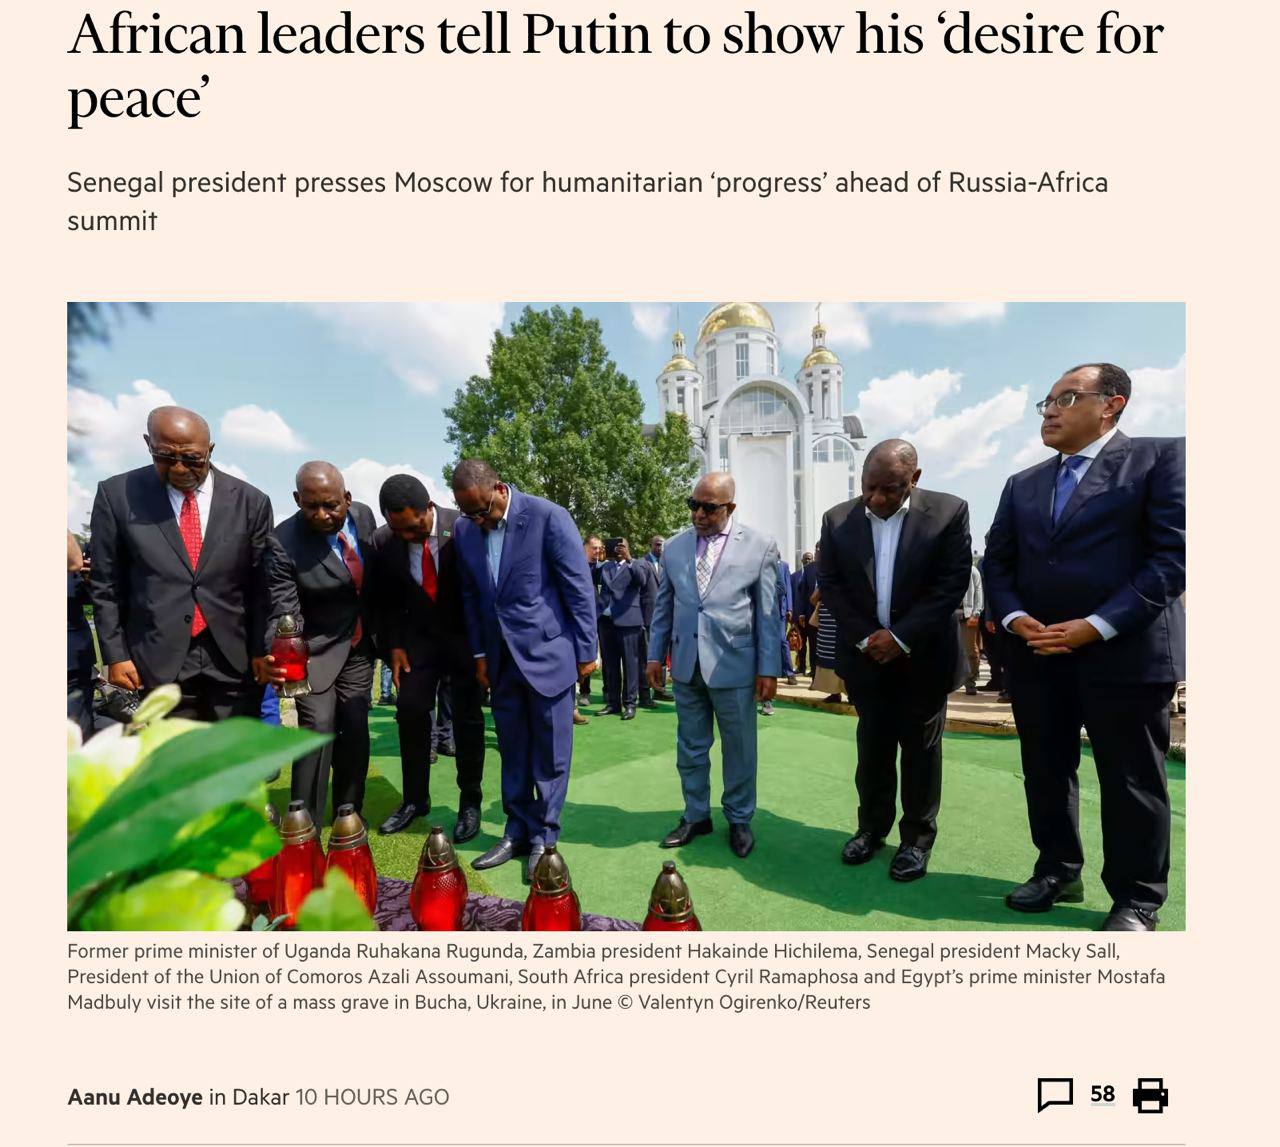 Африканские лидеры призывали Путина продемонстрировать стремление к миру